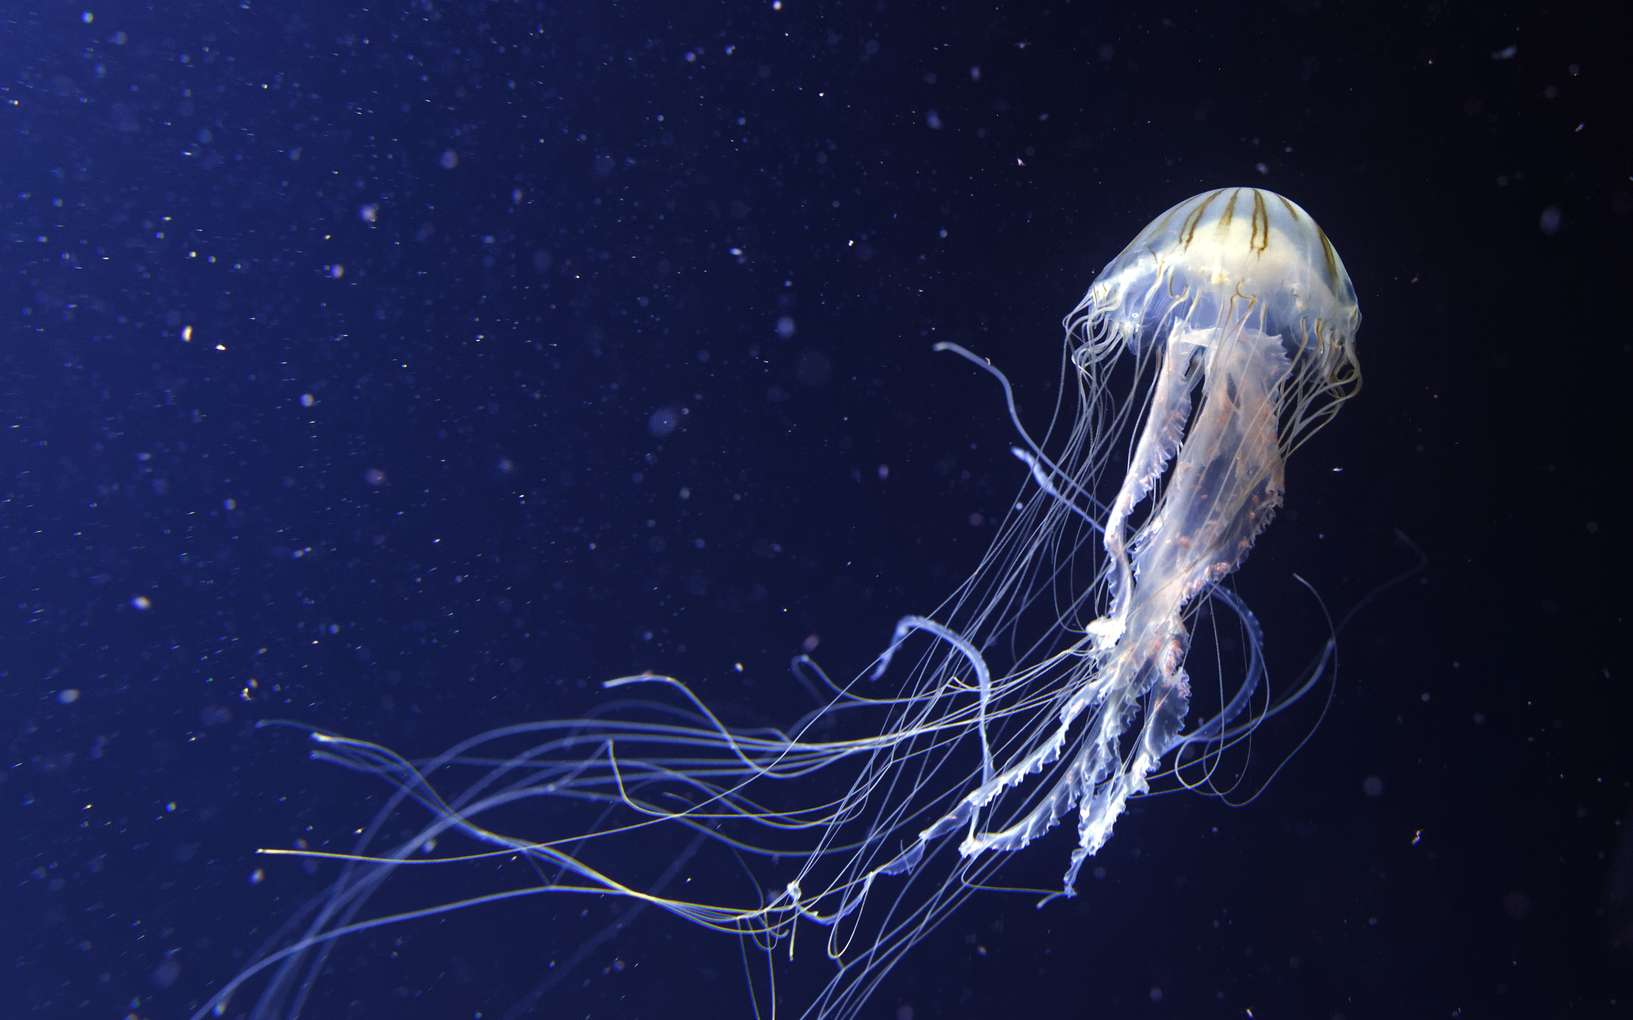 Les filaments de la méduse peuvent provoquer des piqûres. © david harding, fotolia